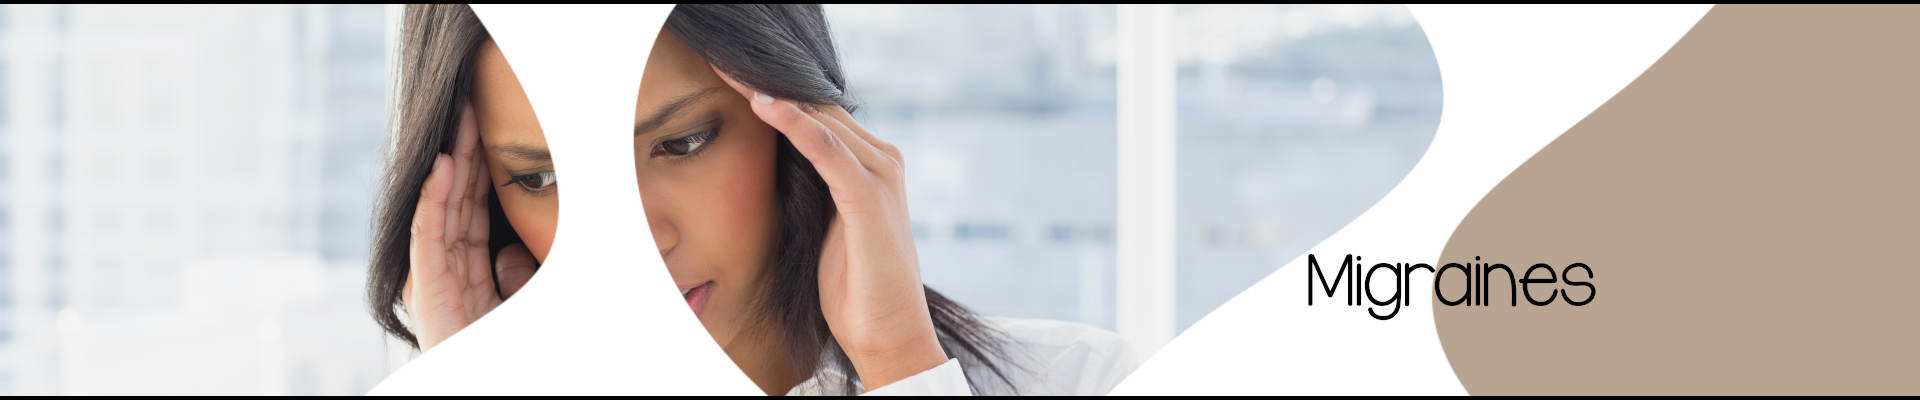 Ostéopathie et migraines